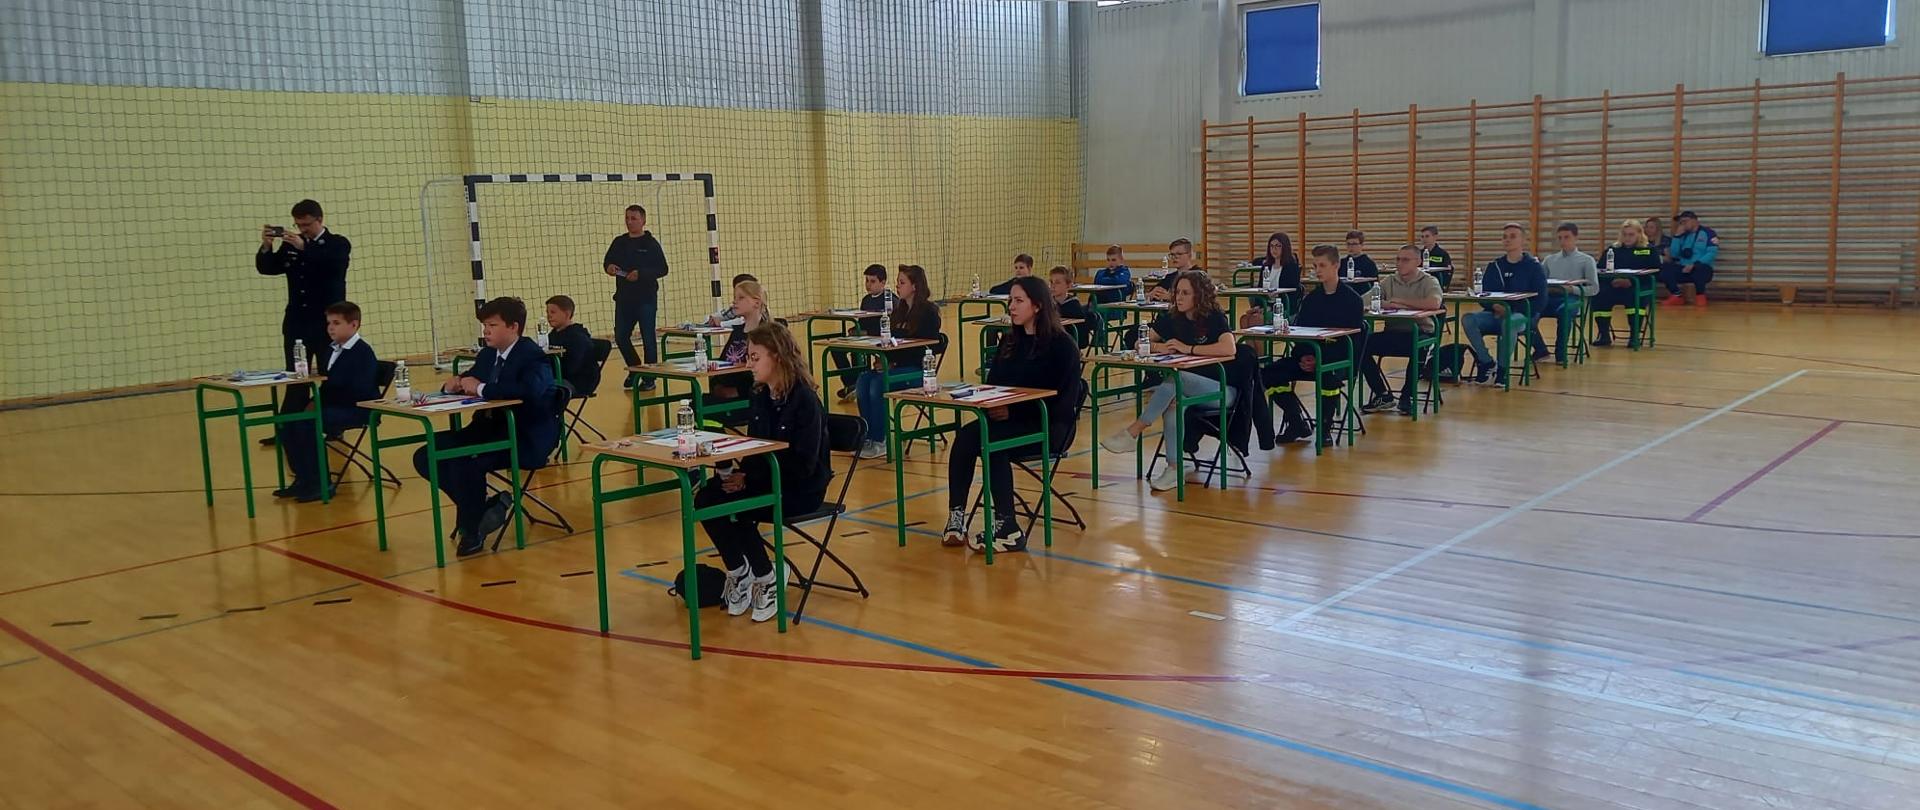 uczestnicy konkursu siedzą przy stolikach ustawionych na hali sportowej